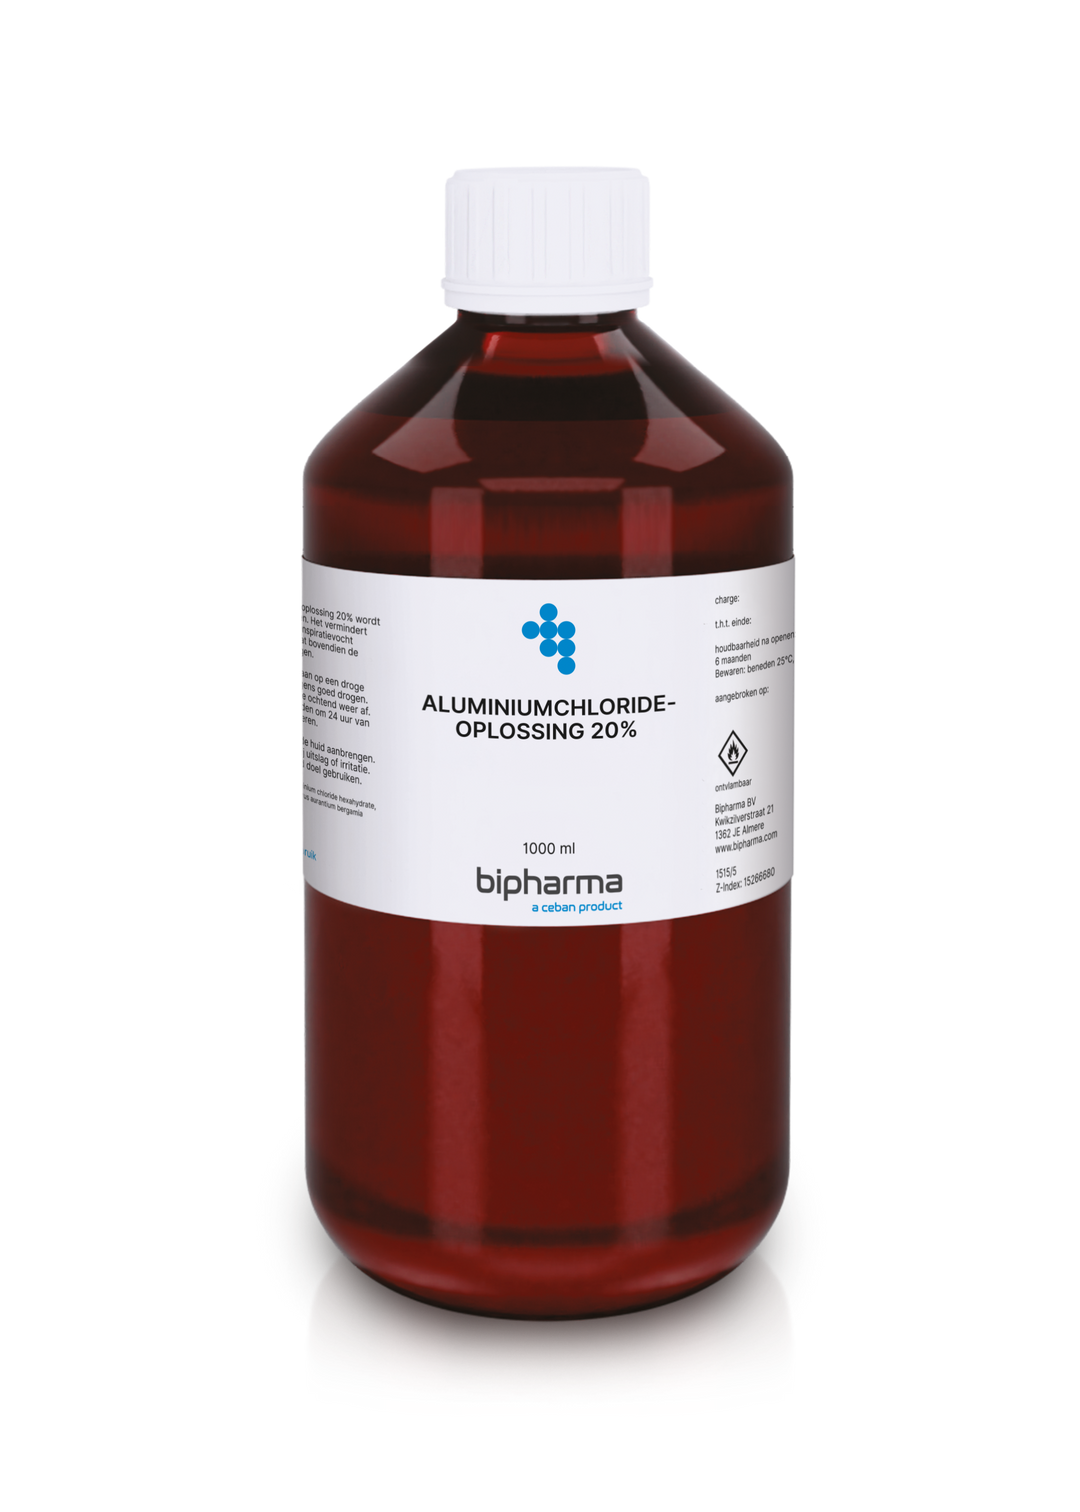 Bipharma Aluminiumchloride Oplossing 20% - BIPHARMA BV - Huidproducten.nl